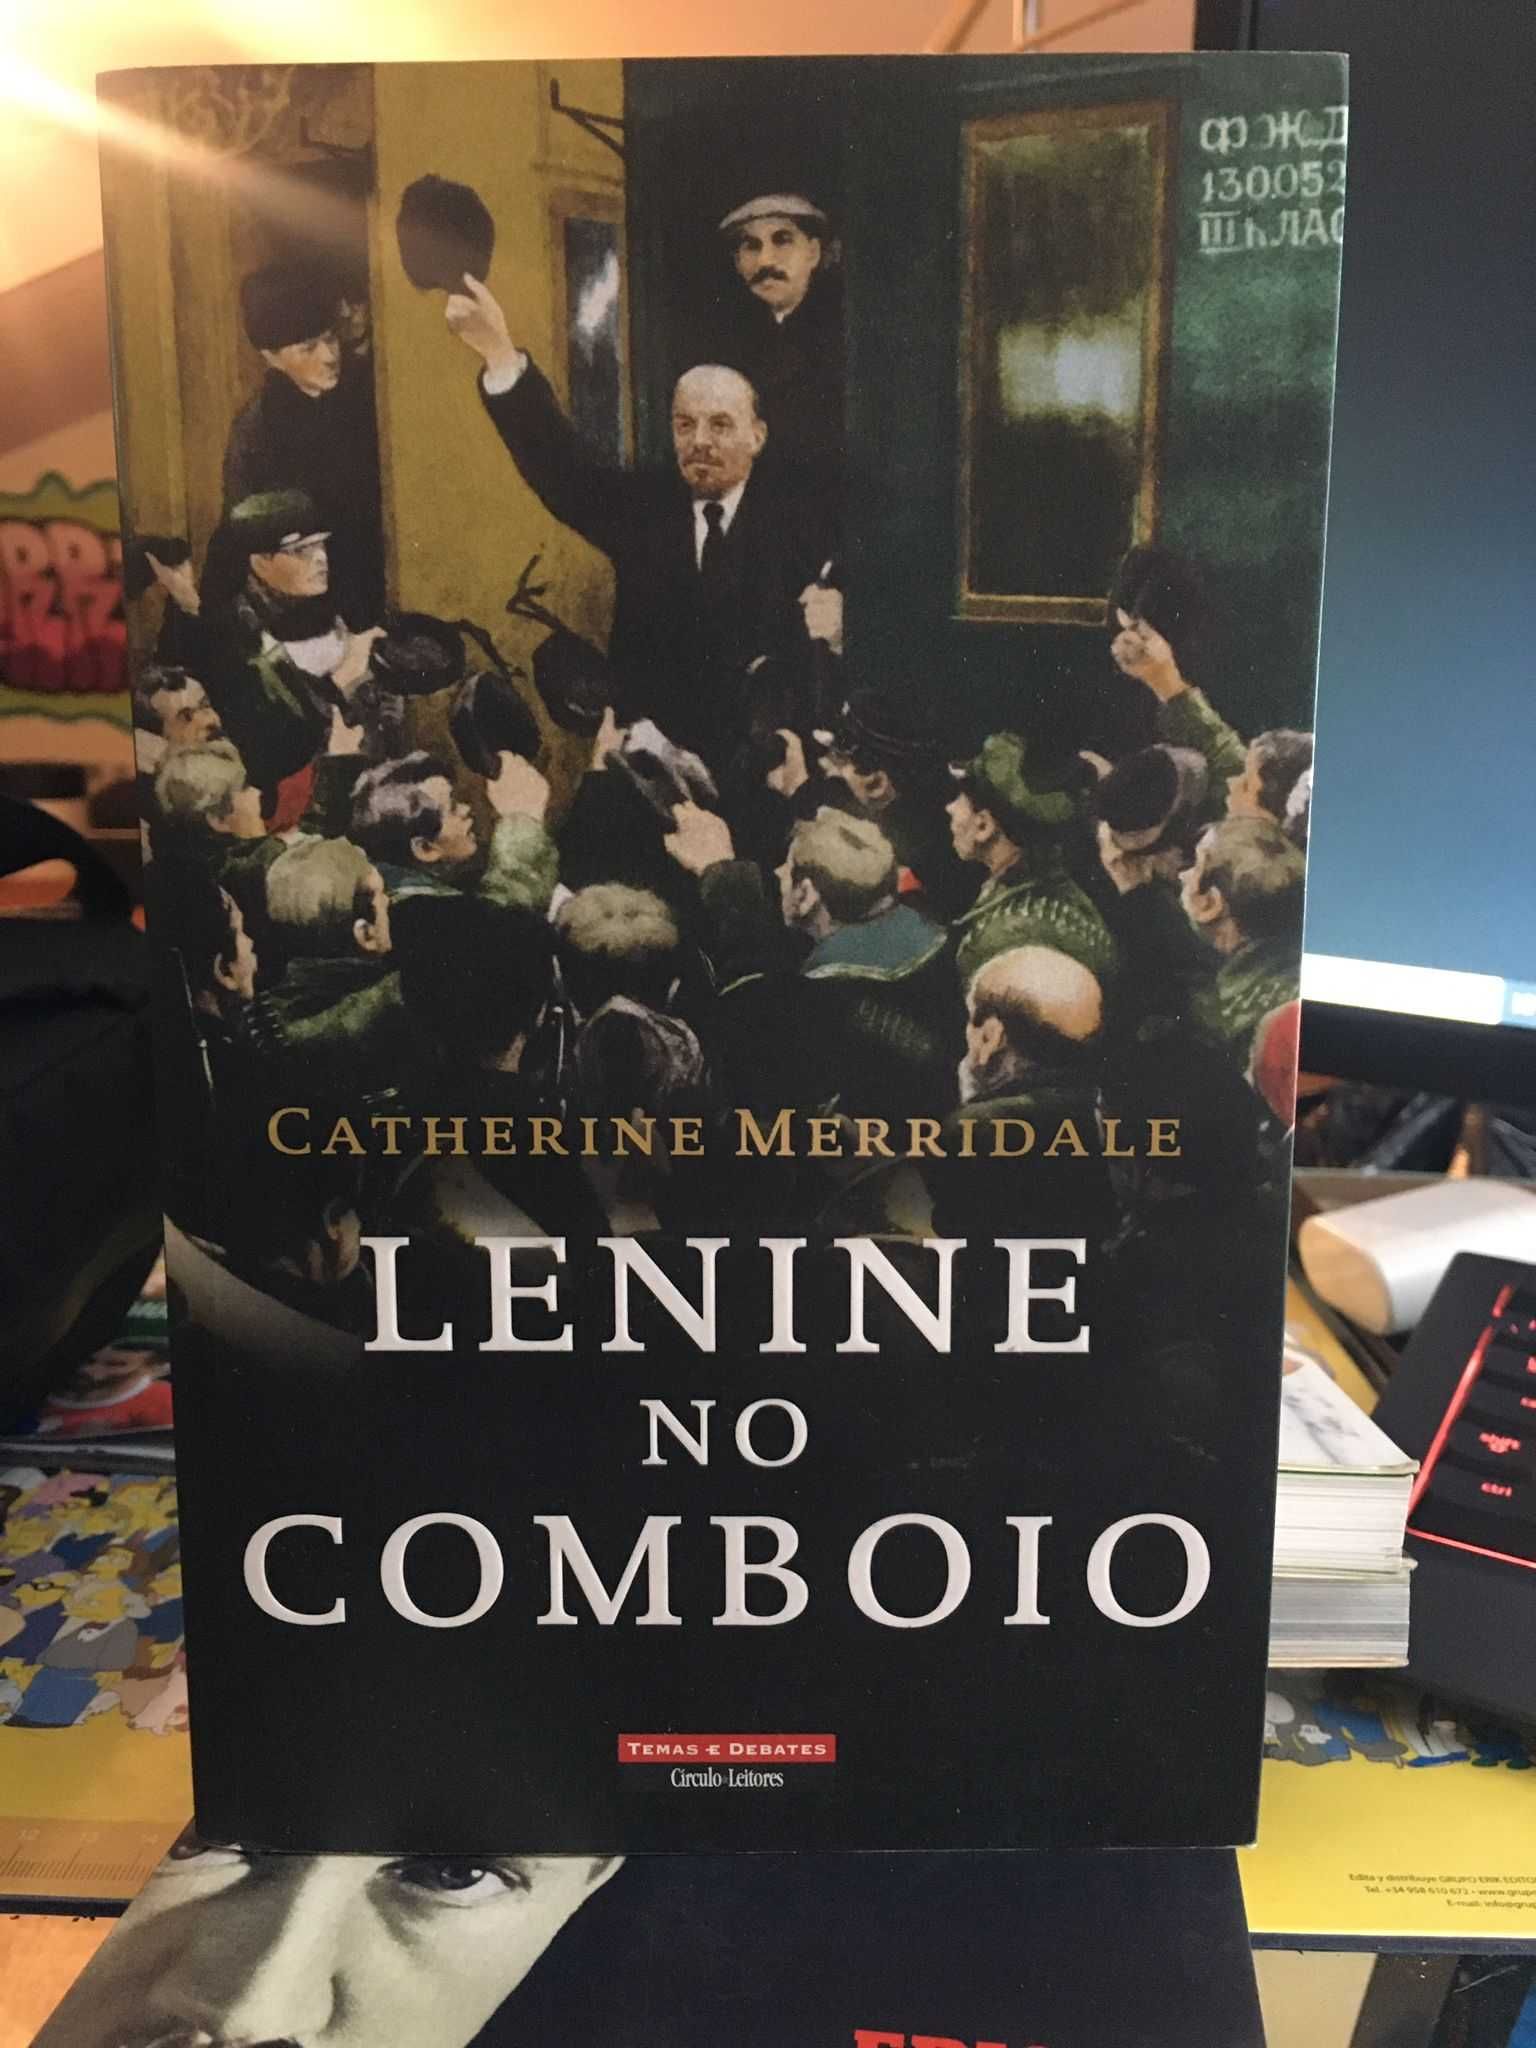 Livro "Lenine no comboio"